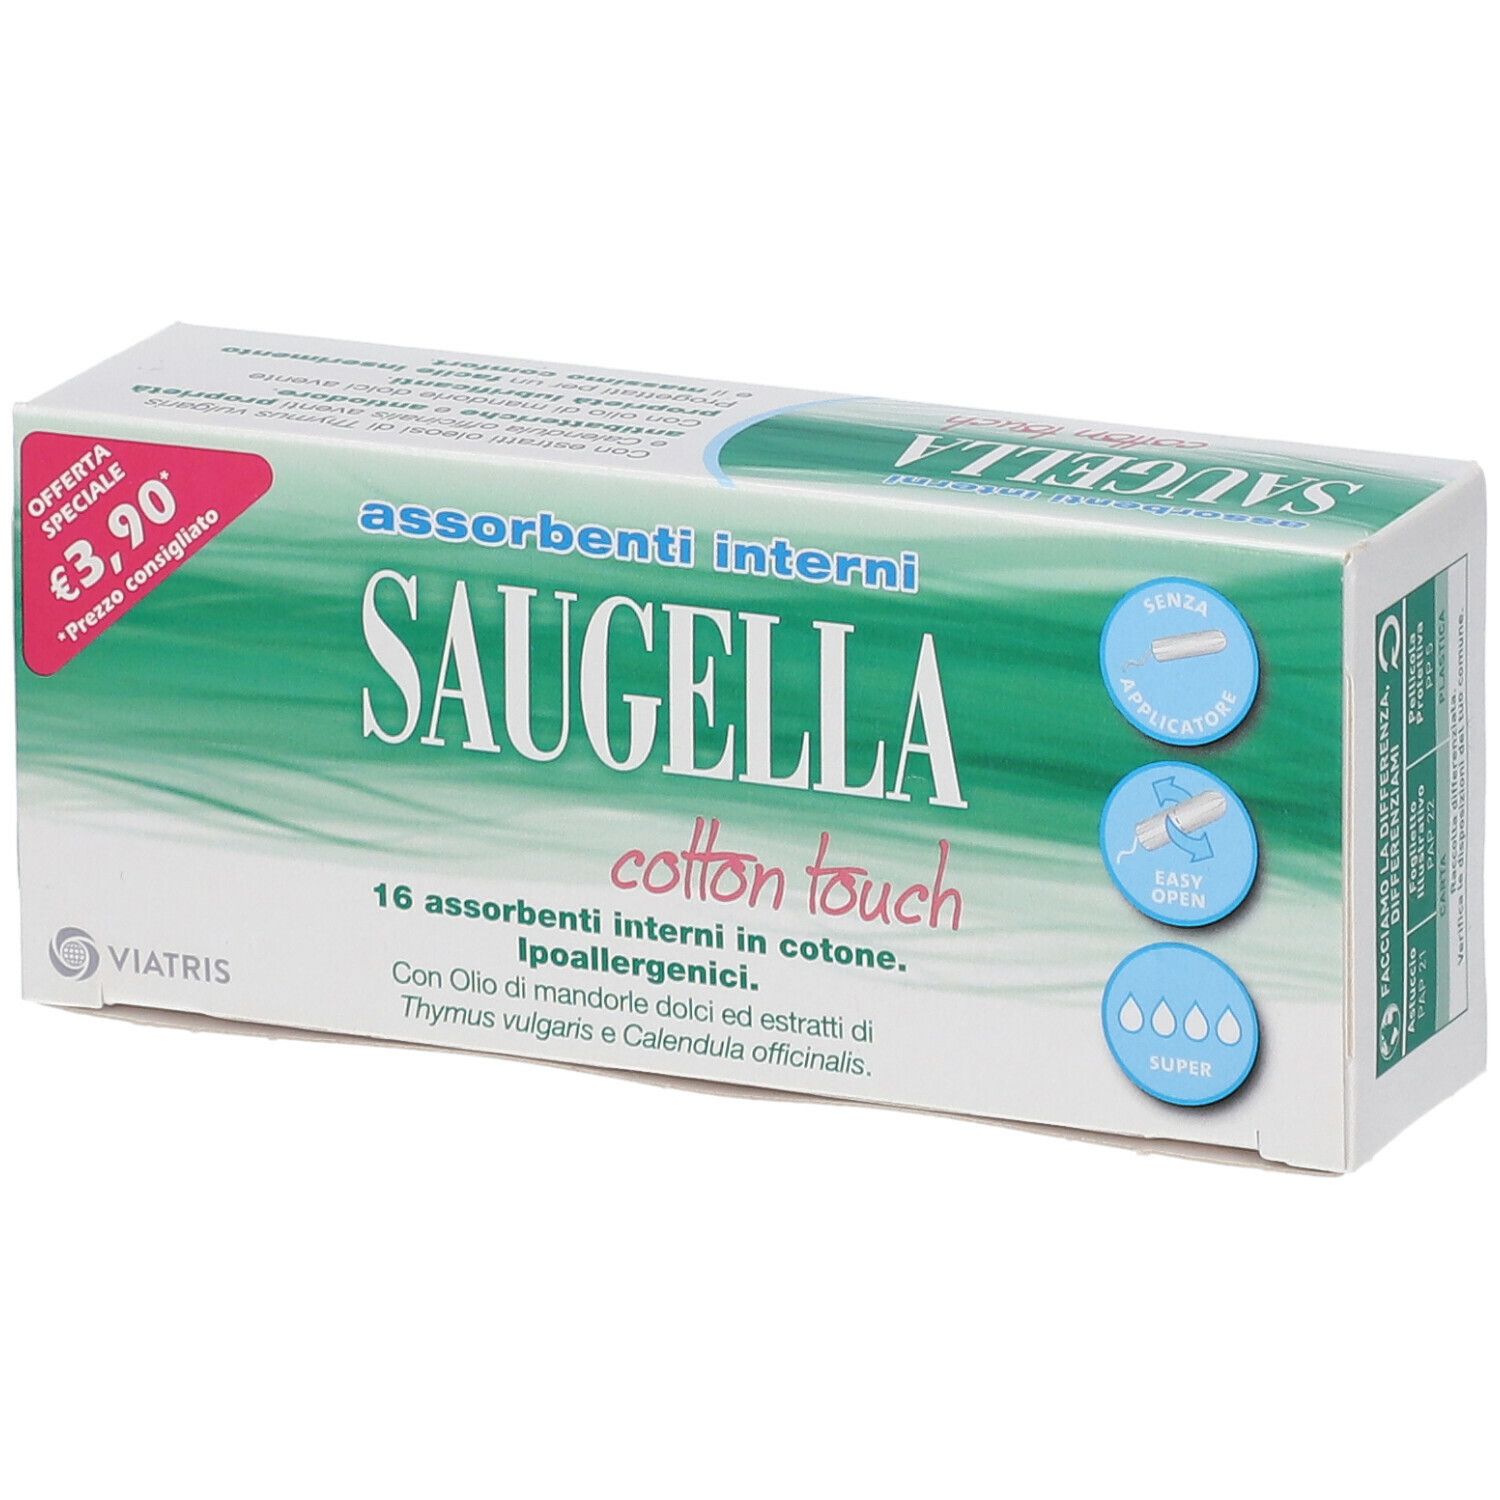 Image of Saugella® Cotton Touch Super Assorbenti Interni